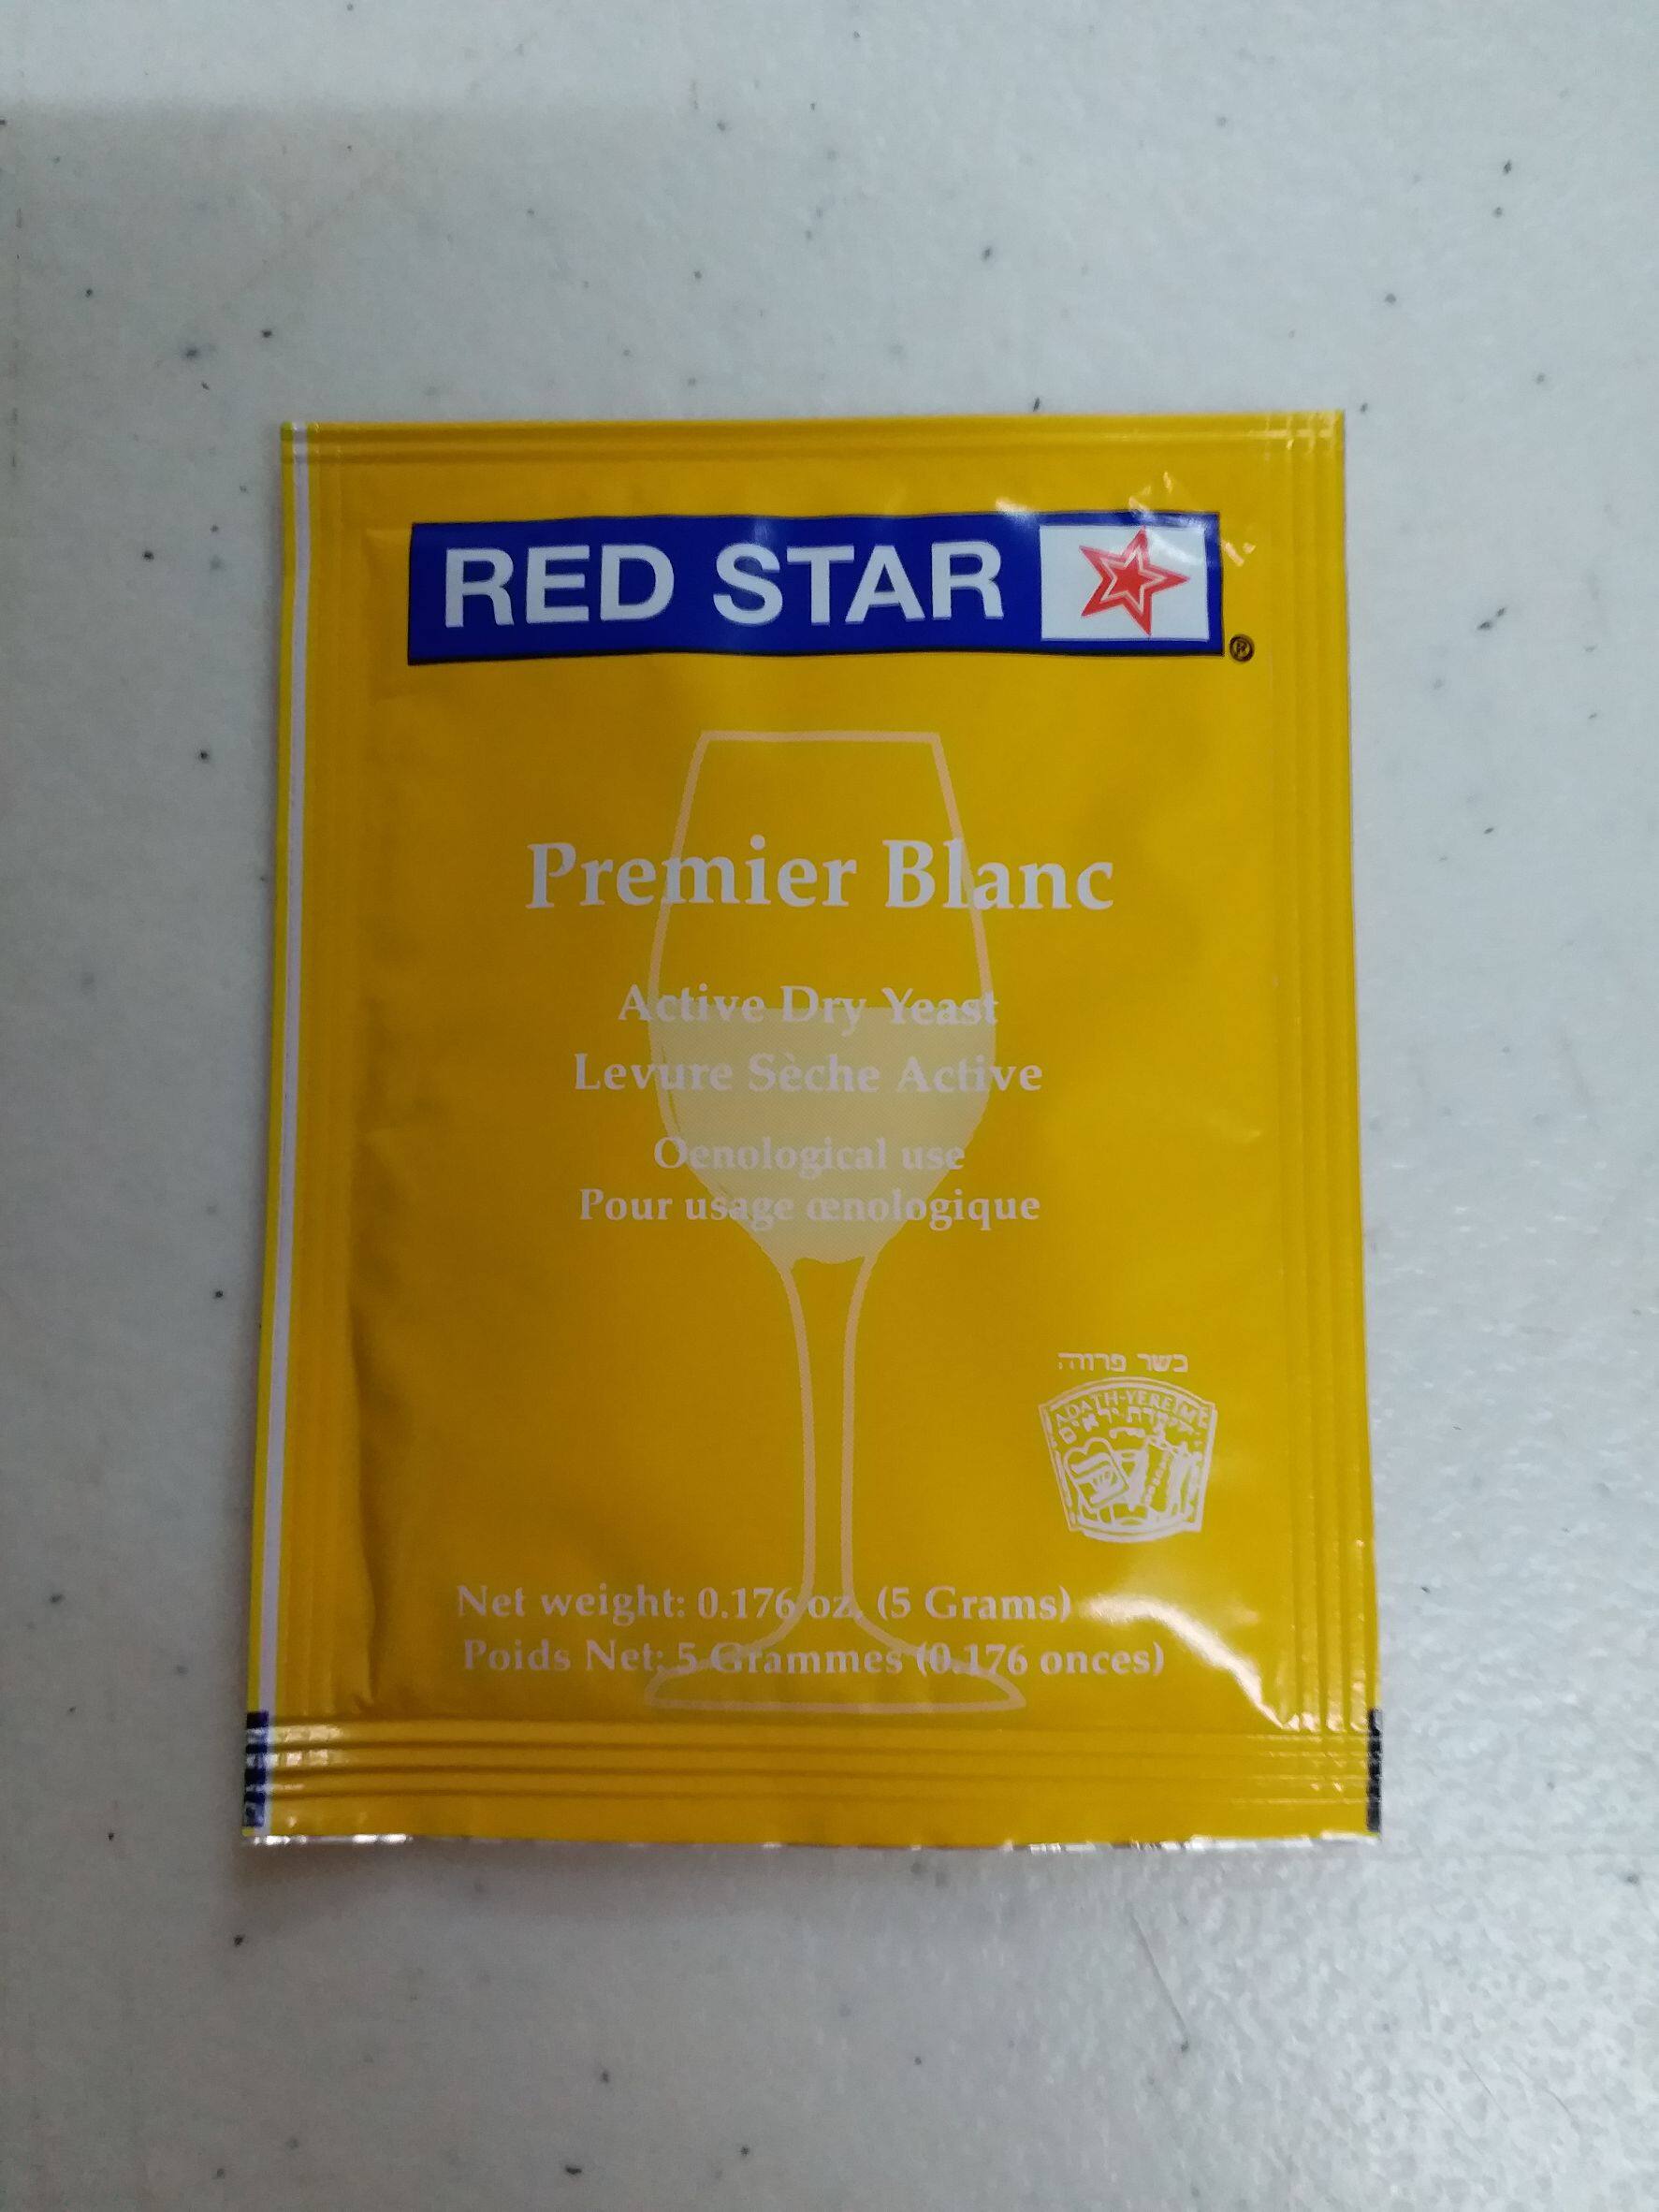 ยีสต์หมักไวน์ RED STAR Pasteur Champagne / Premeir Blanc (ชื่อใหม่) 5 gram ซองสีเหลือง เหมาะสำหรับการหมักไวน์ขาว ไวน์แดง จากผลไม้โดยเฉพาะ องุ่น